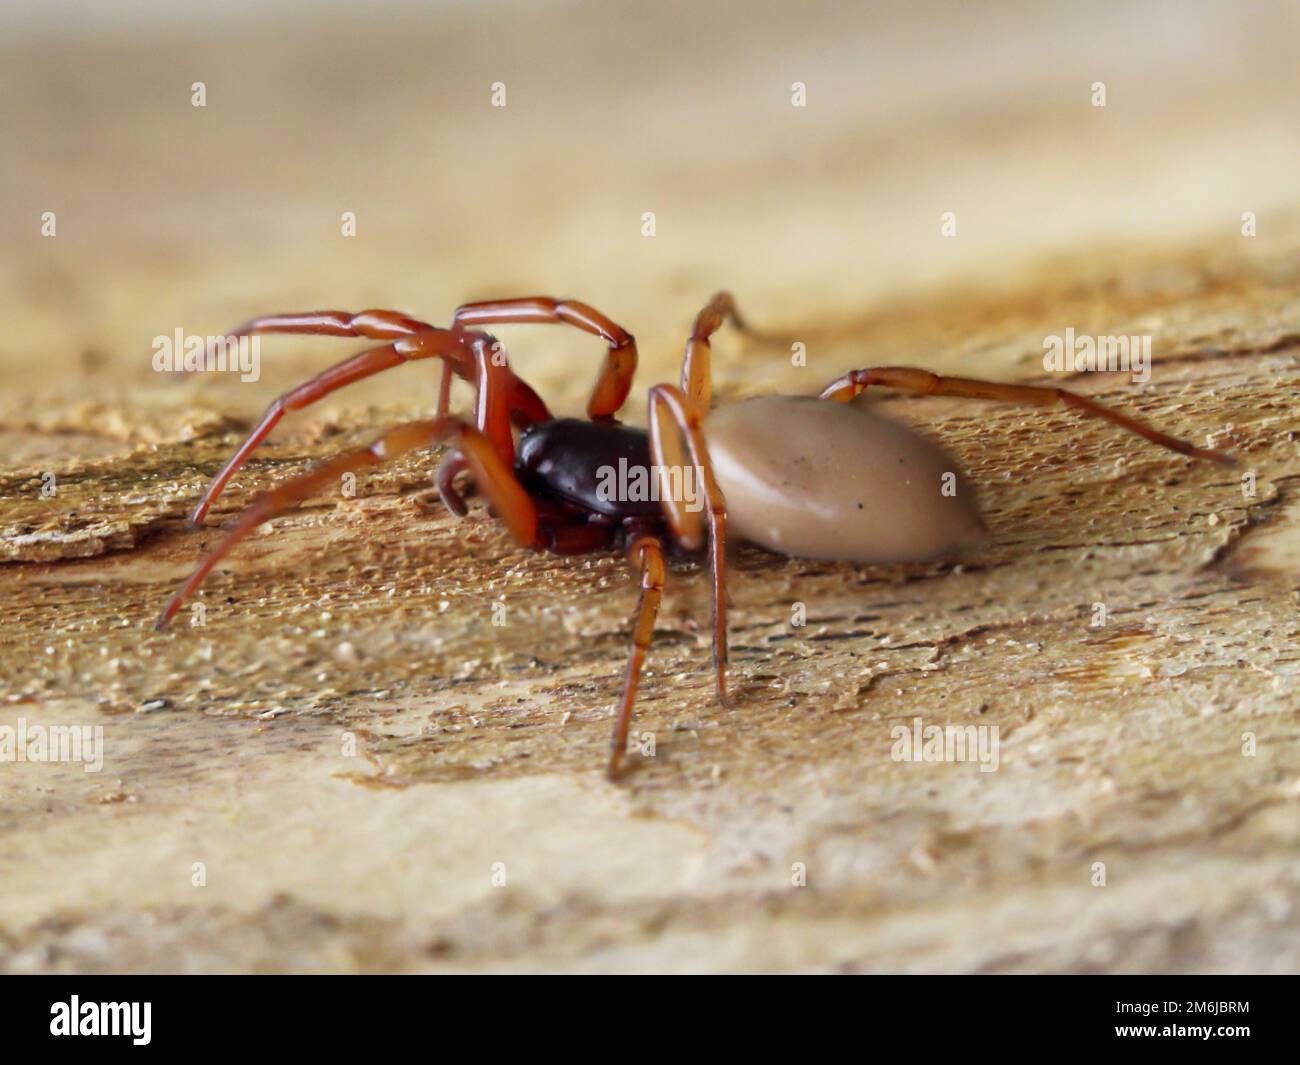 Gros plan d'une araignée à six yeux. C'est une famille des véritables araignées de Web. Banque D'Images